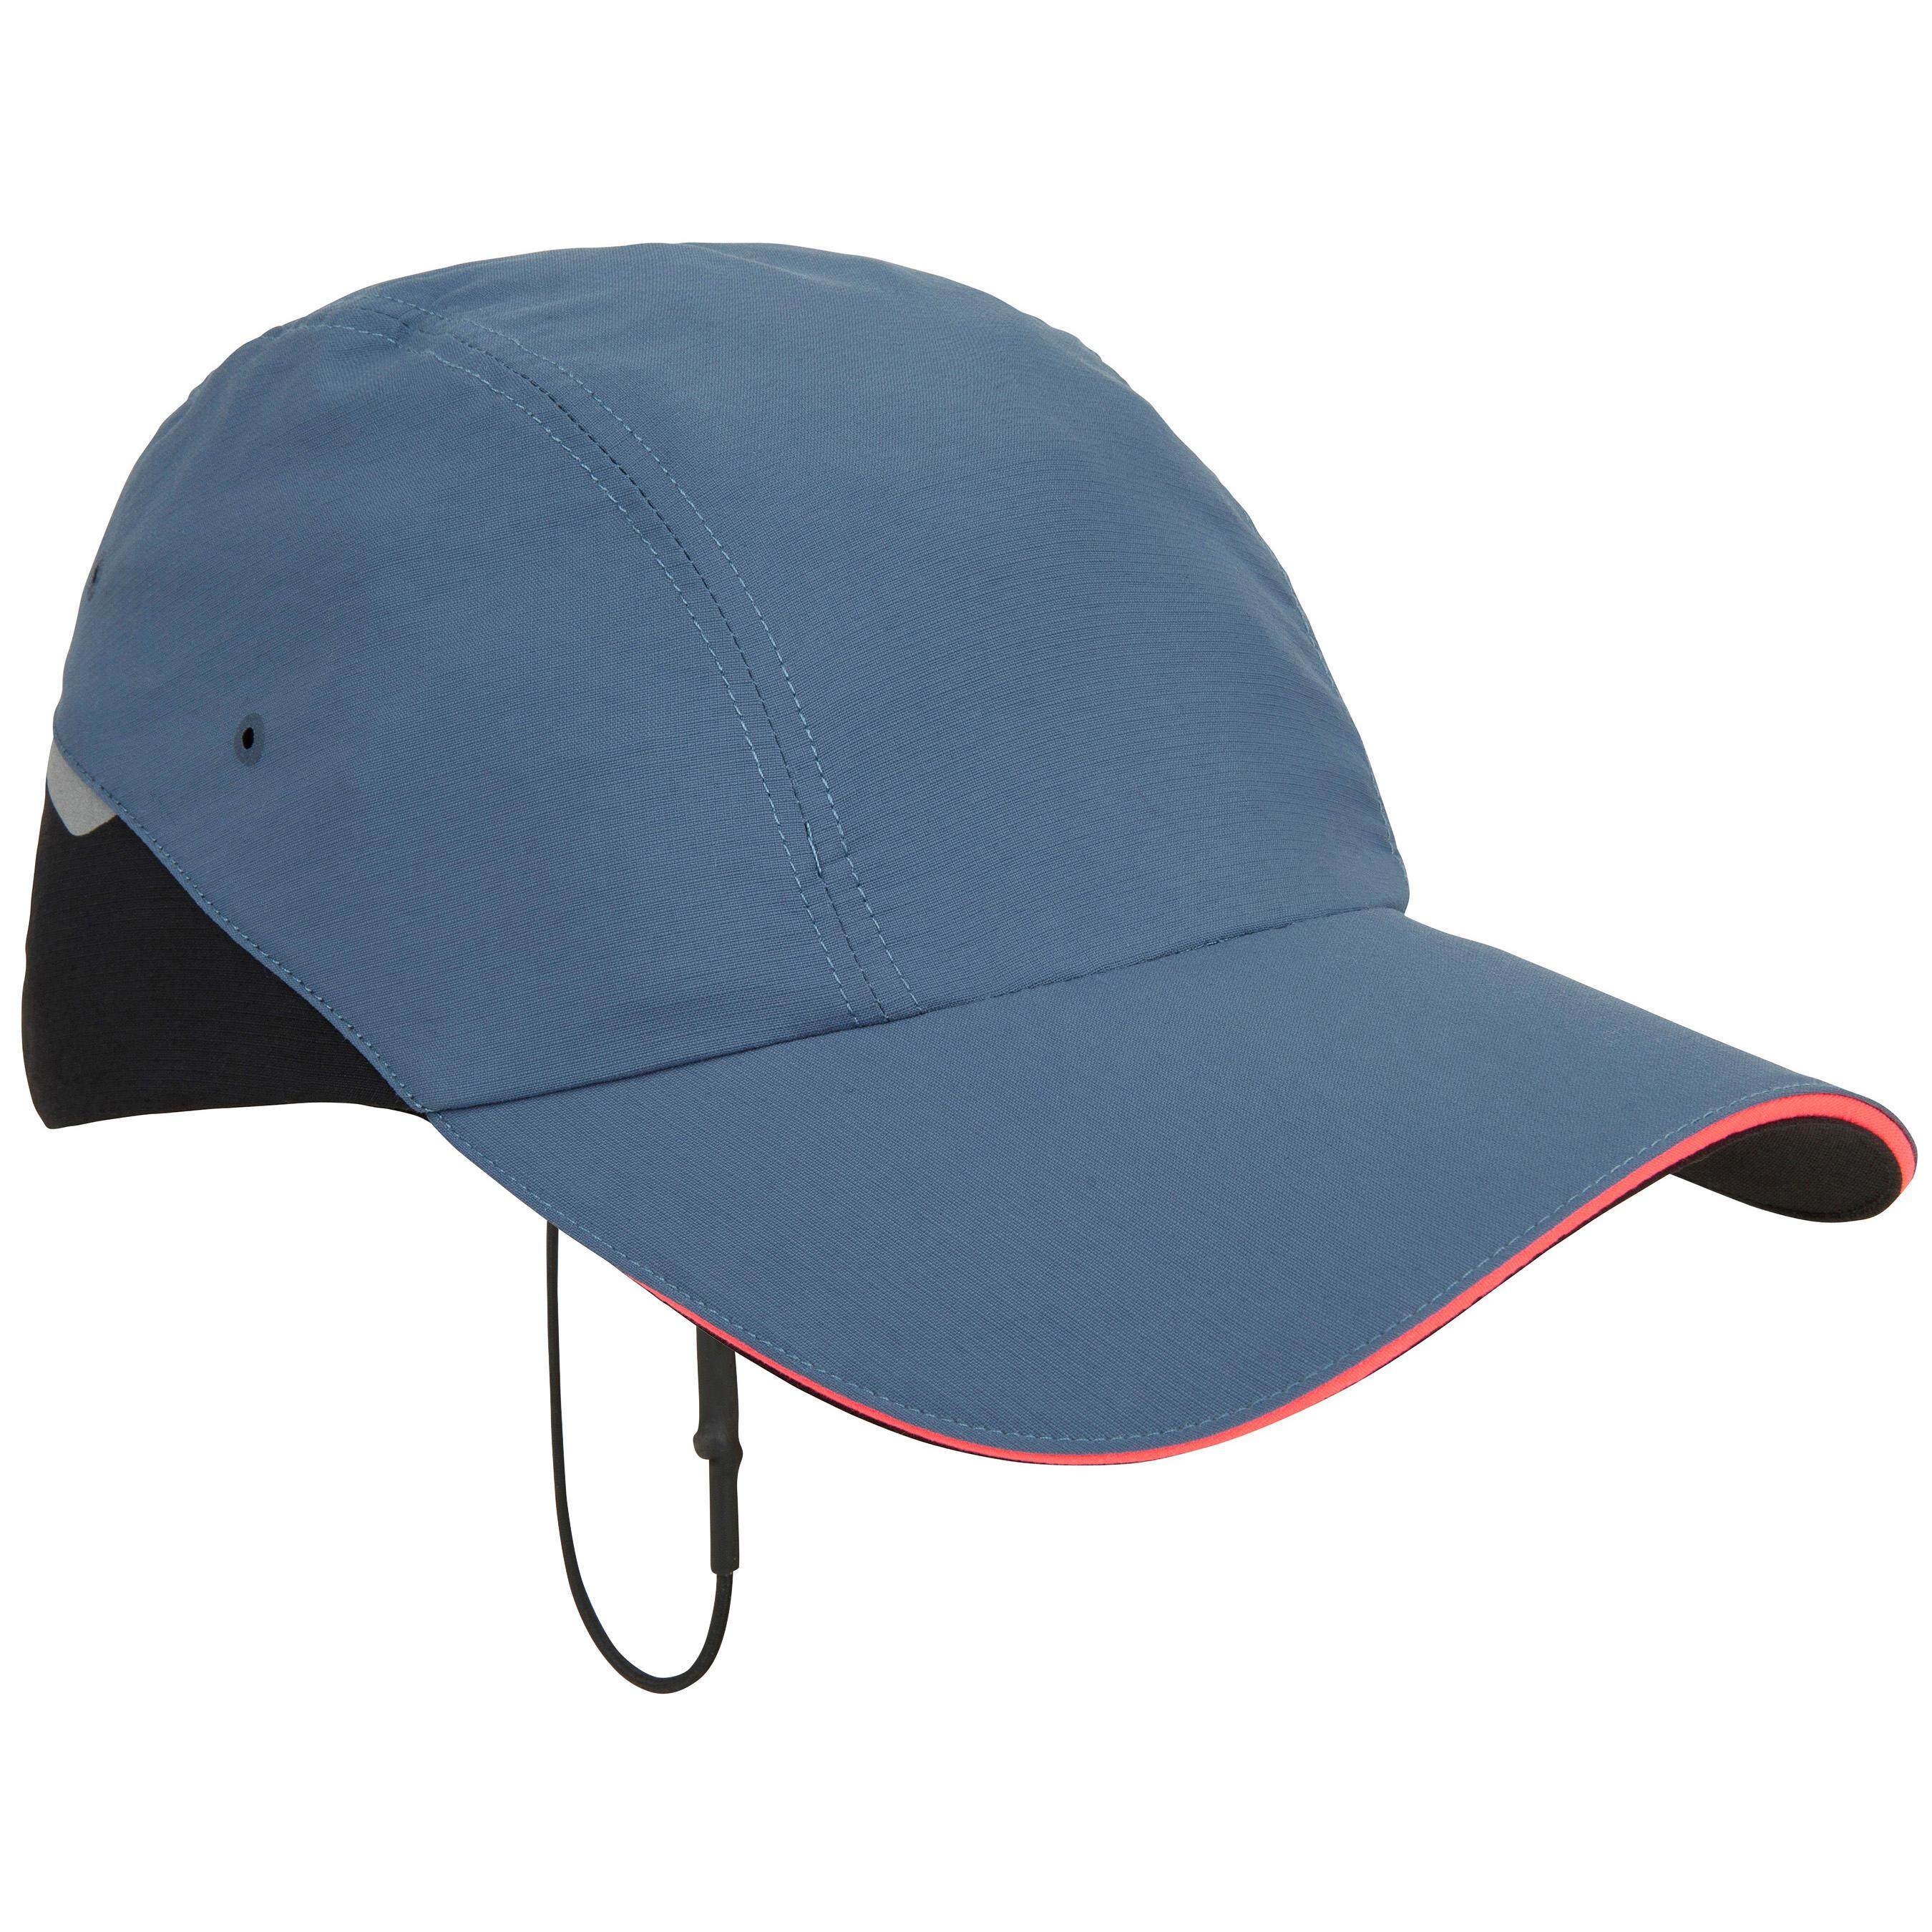 [ด่วน!! โปรโมชั่นมีจำนวนจำกัด] หมวกสำหรับใส่ล่องเรือรุ่น RACE 500 (สีน้ำเงินเทา) สำหรับ เรือใบ เรือยอร์ช